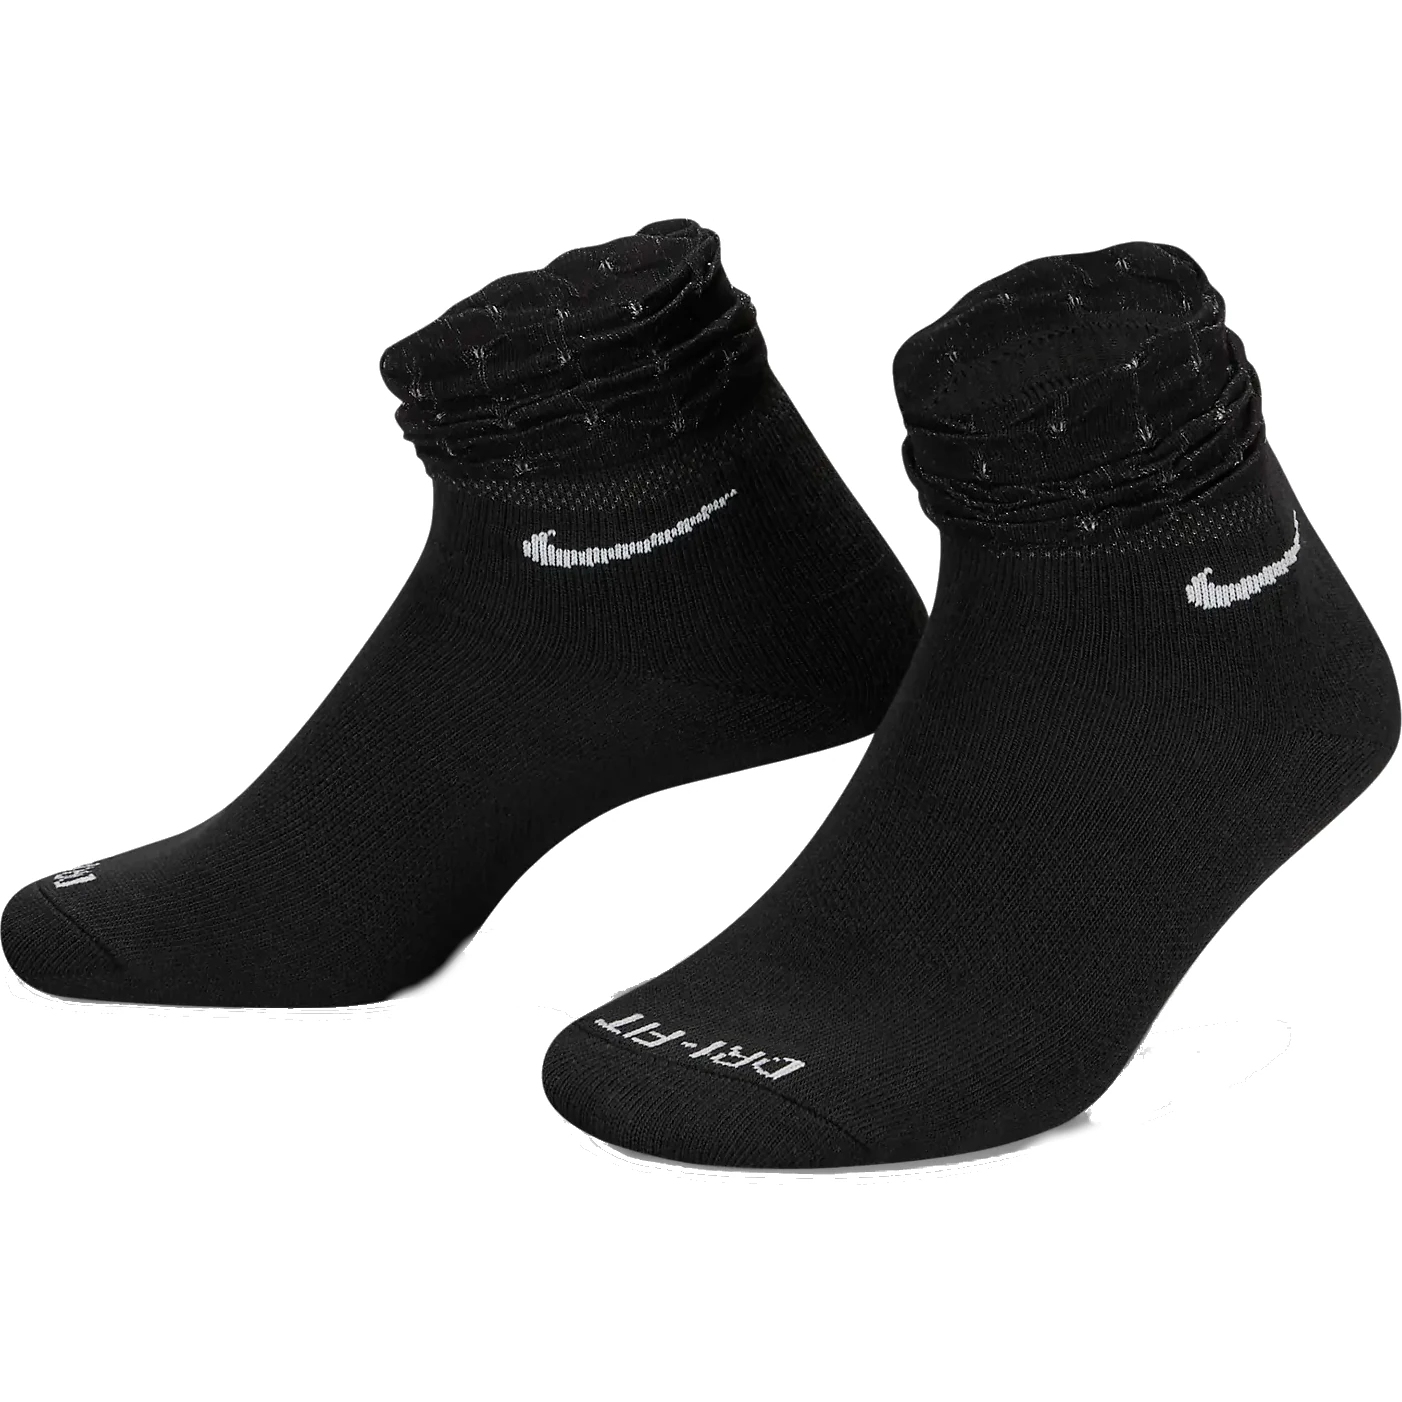 Produktbild von Nike Everyday Trainings-Knöchelsocken - schwarz/weiß DH5485-010